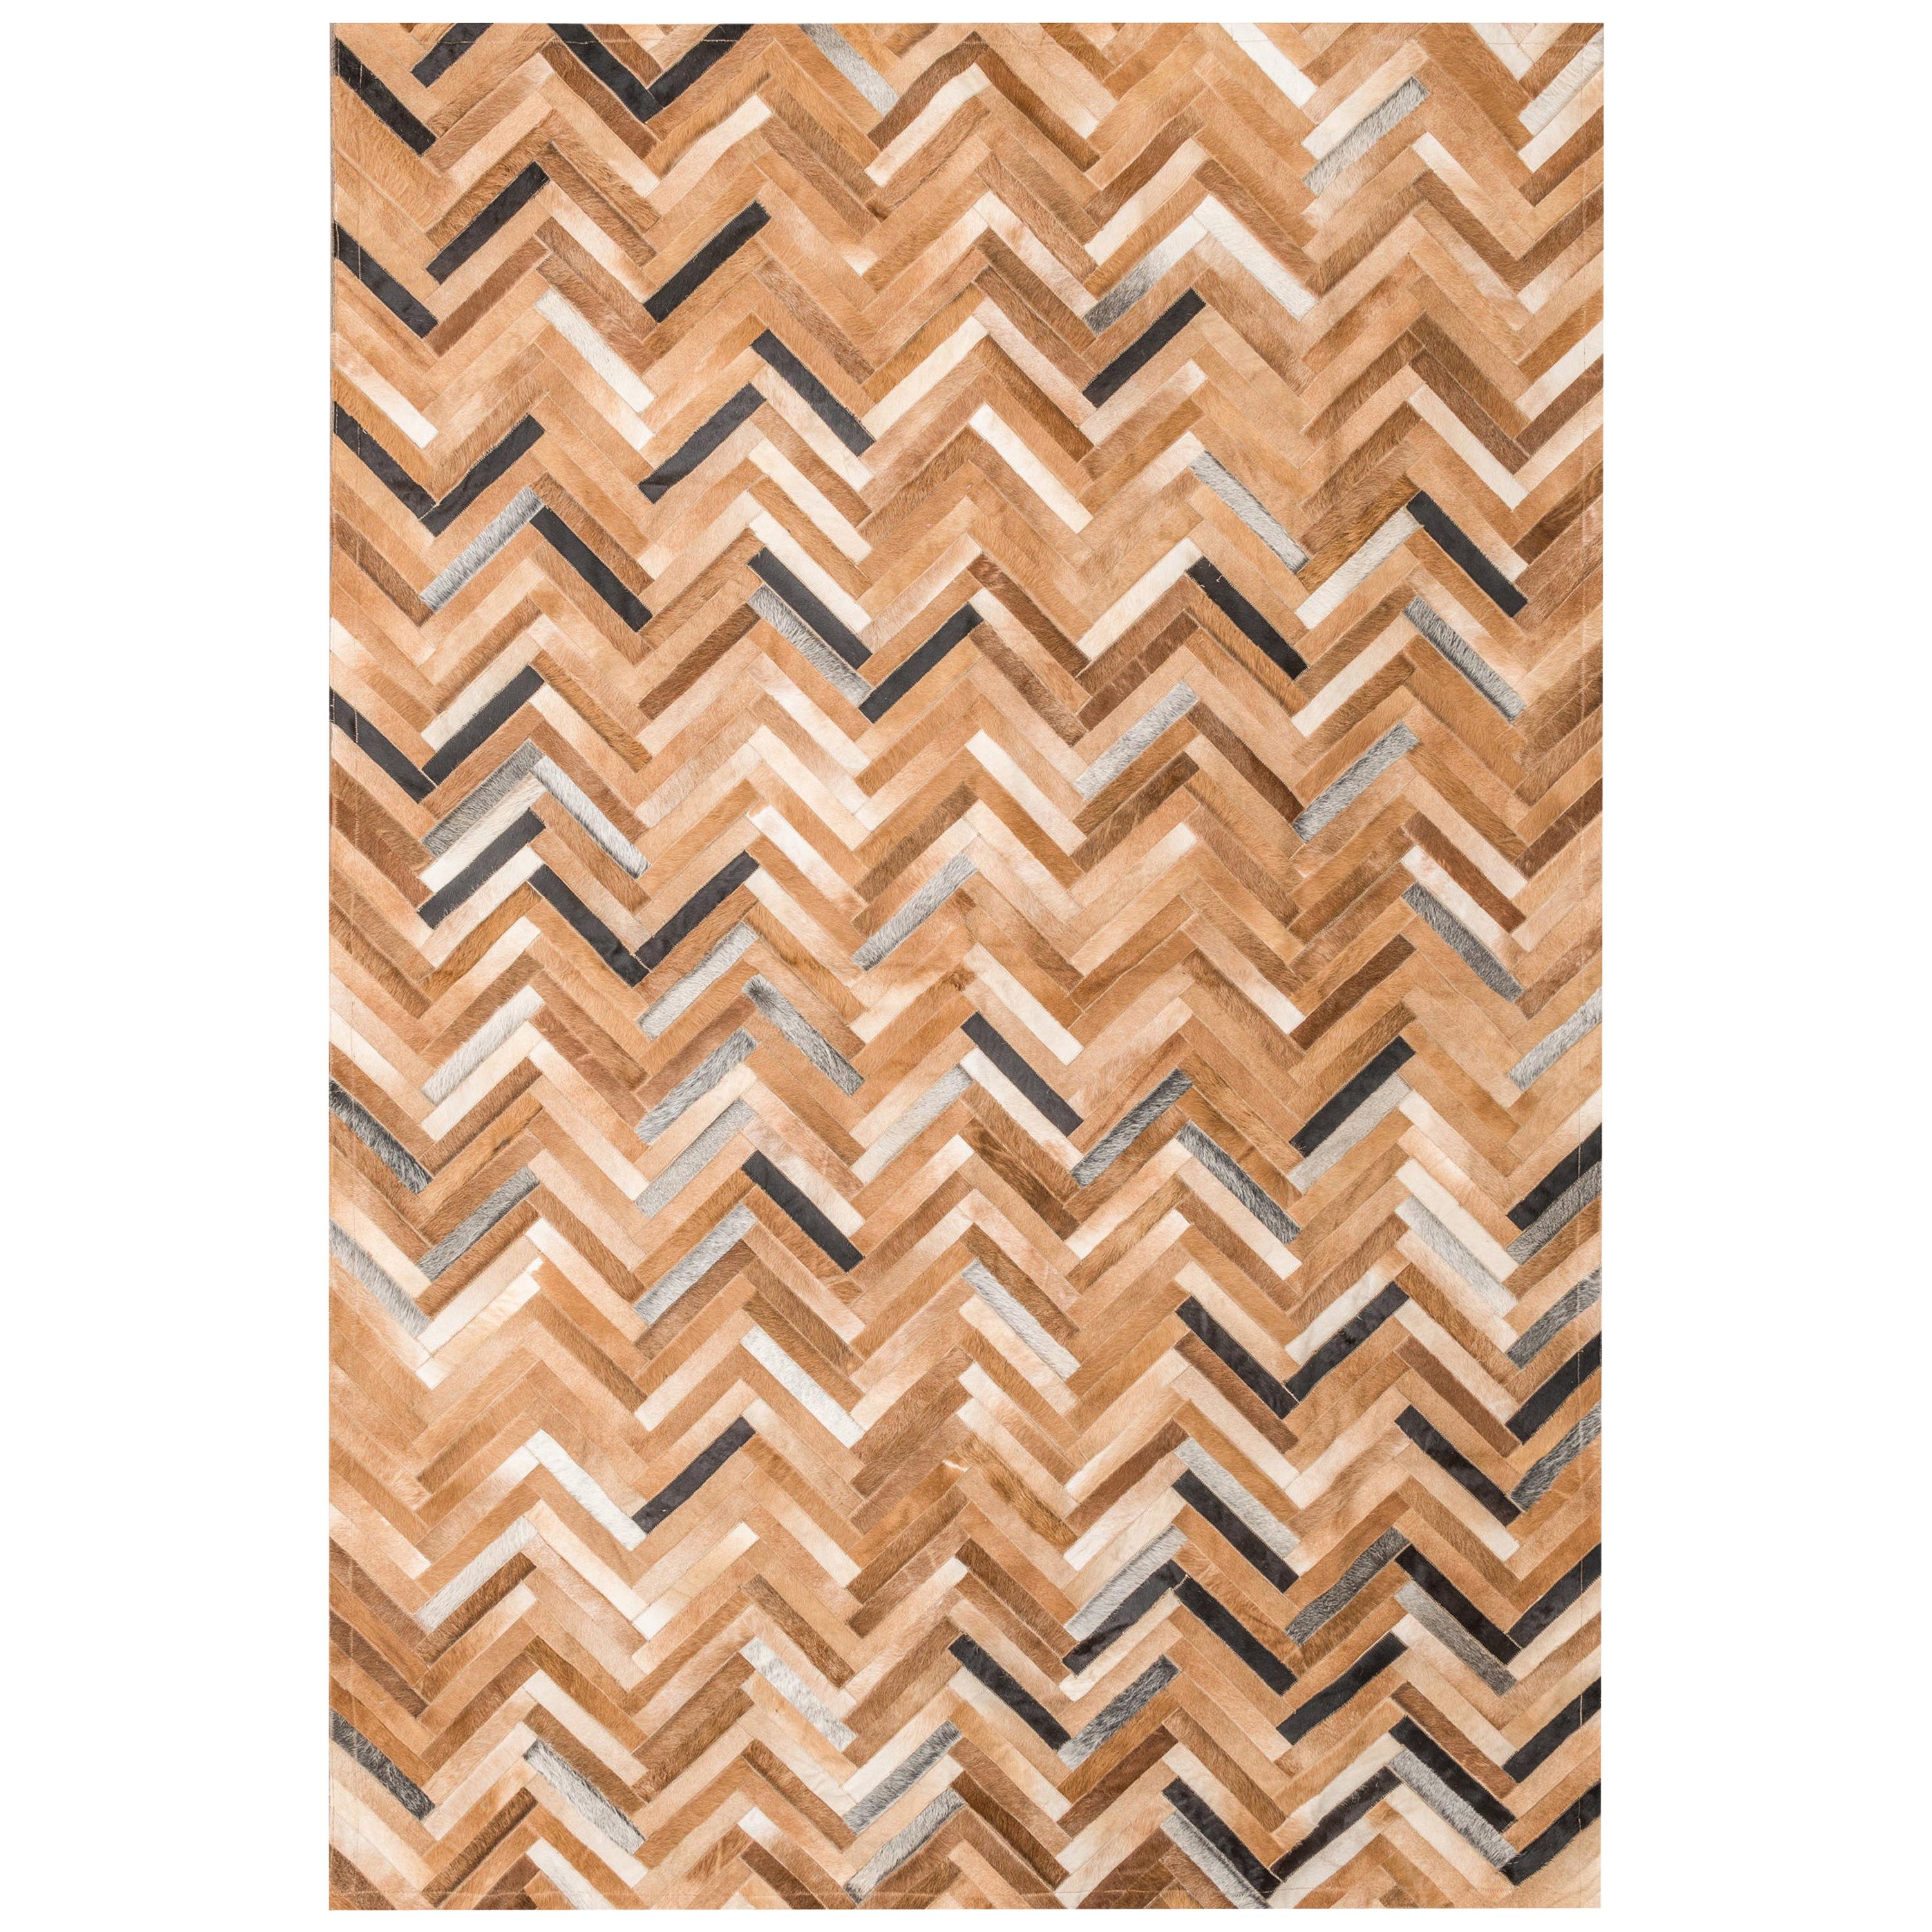 Herringbone Pattern Brown & White De Los Bosques Cowhide Area Floor Rug X-Large  For Sale